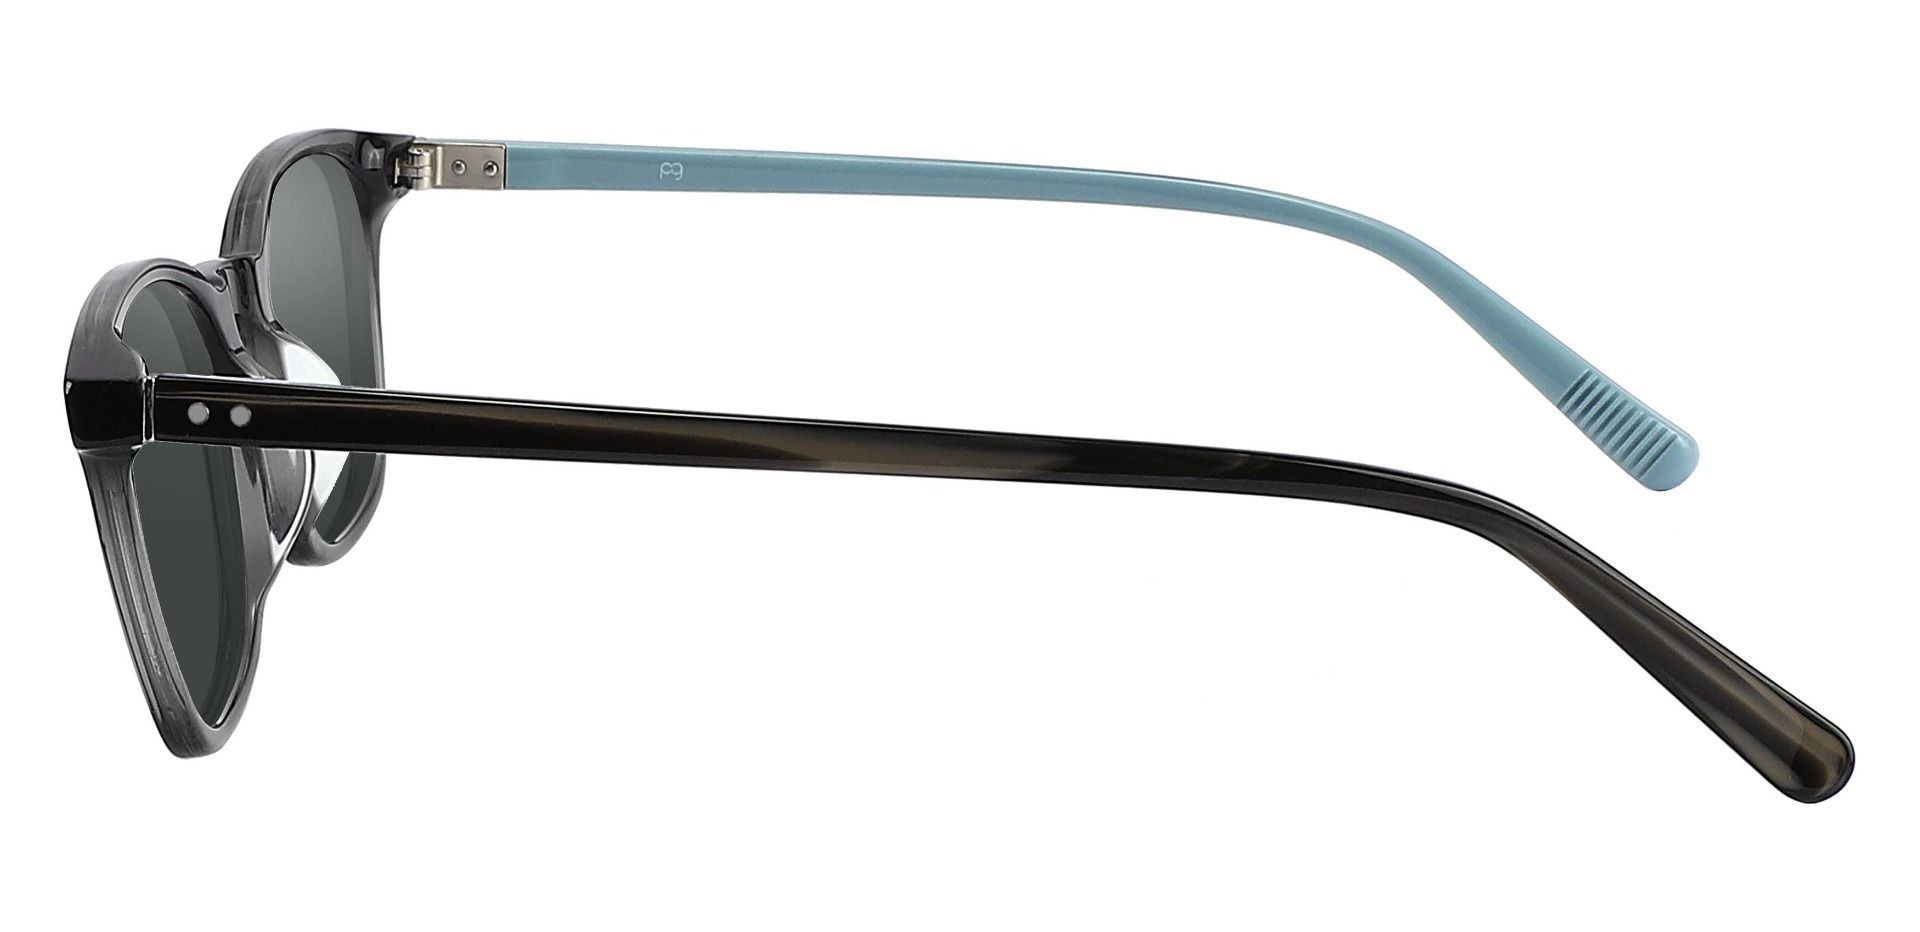 Alonzo Square Progressive Sunglasses - Gray Frame With Gray Lenses